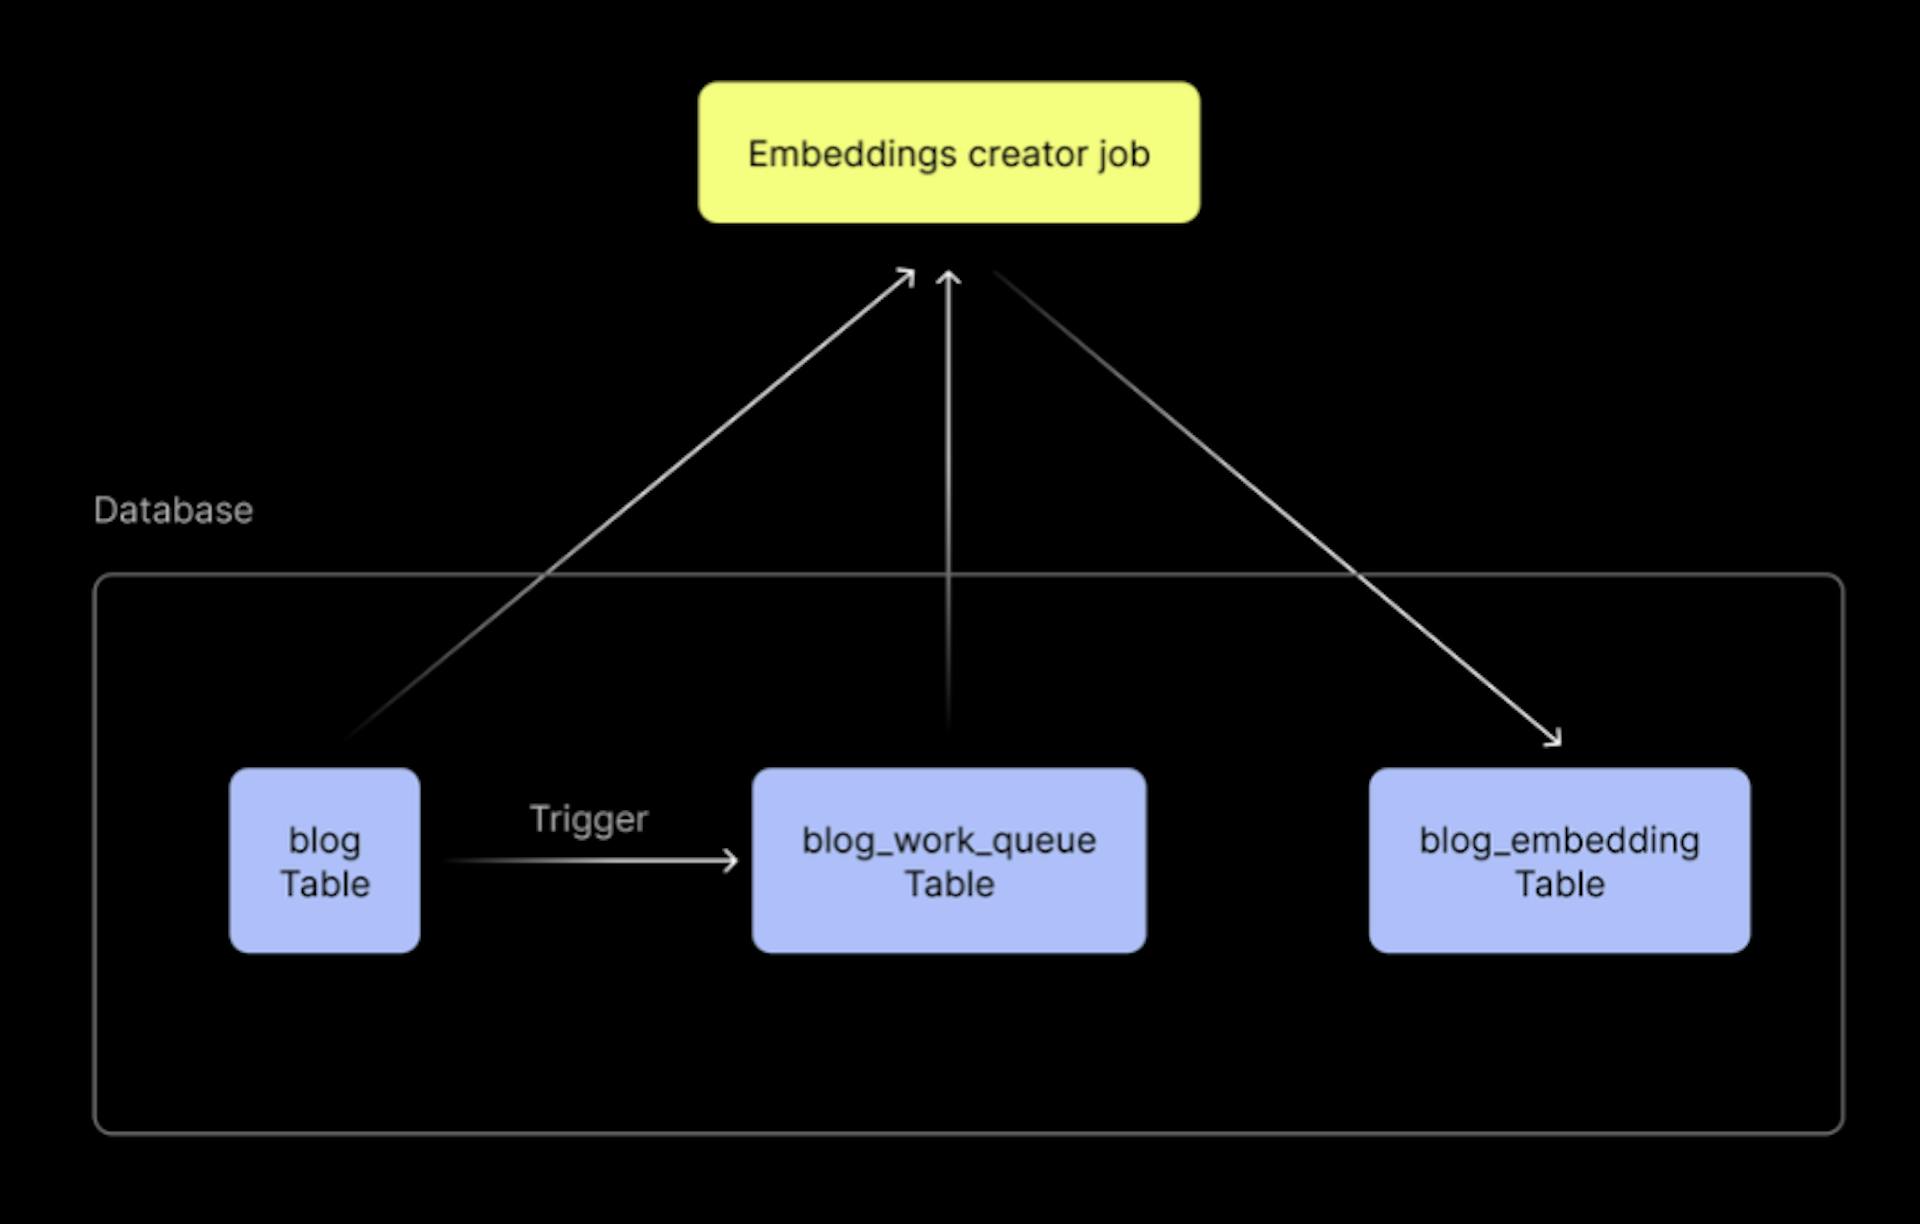 Arquitetura de referência para um sistema simples e resiliente para incorporação de dados em uma tabela PostgreSQL existente. Usamos o exemplo de caso de uso de um aplicativo de blog, daí os nomes das tabelas acima.